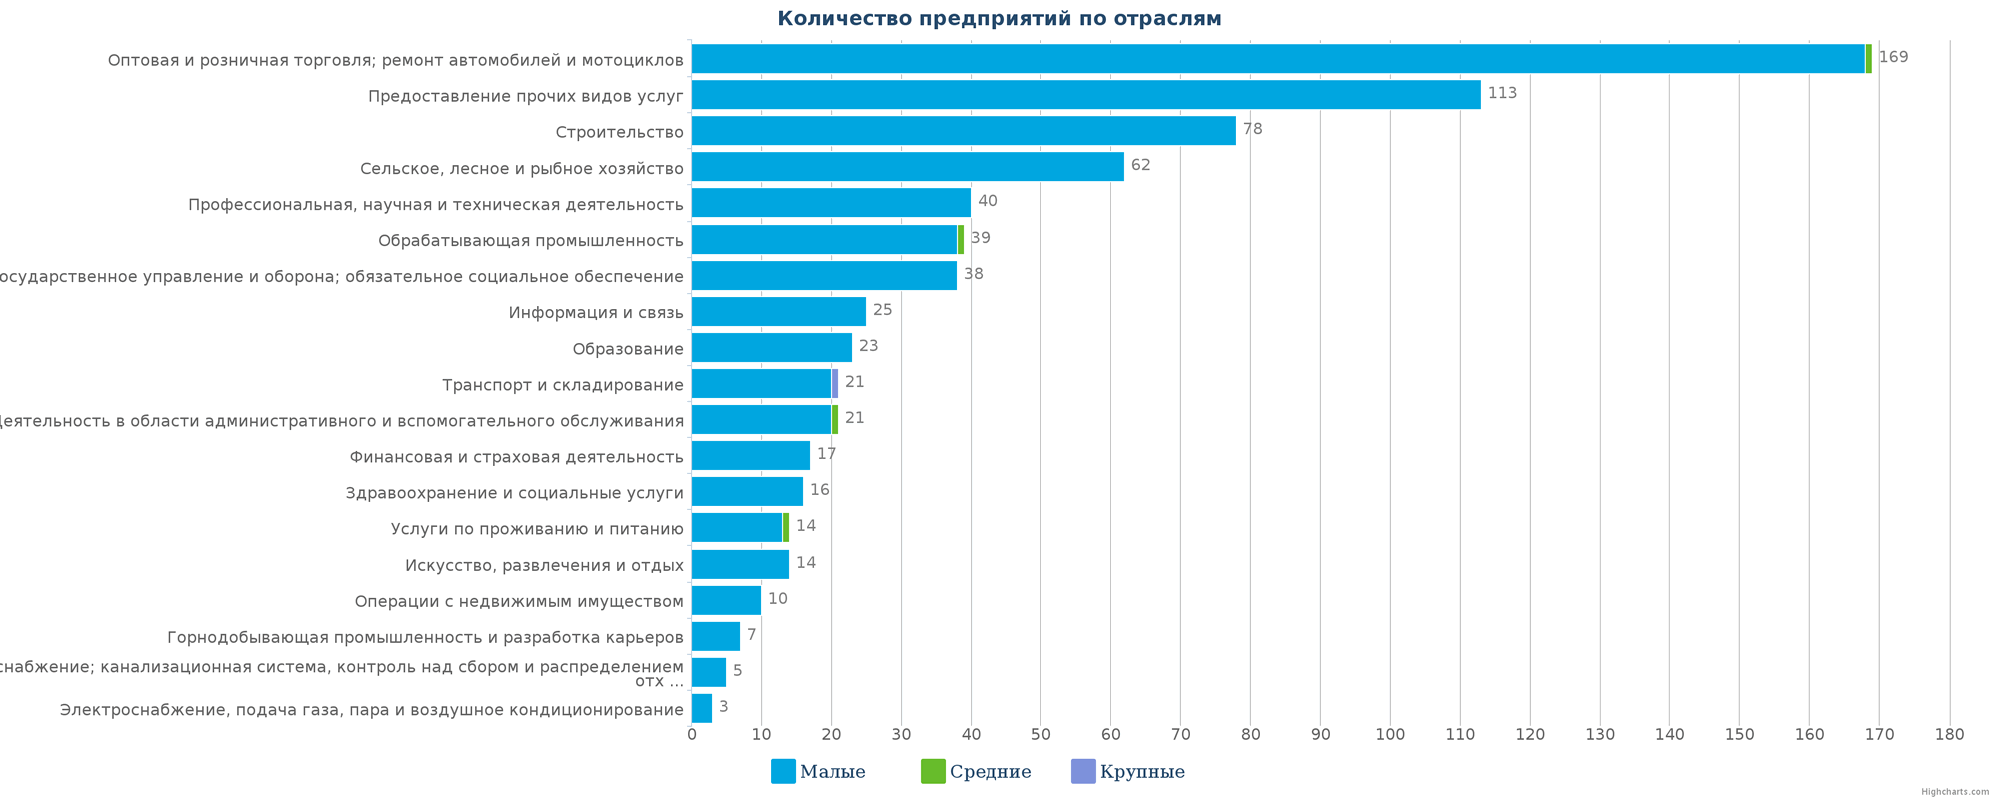 Новые компании в едином реестре Казахстана